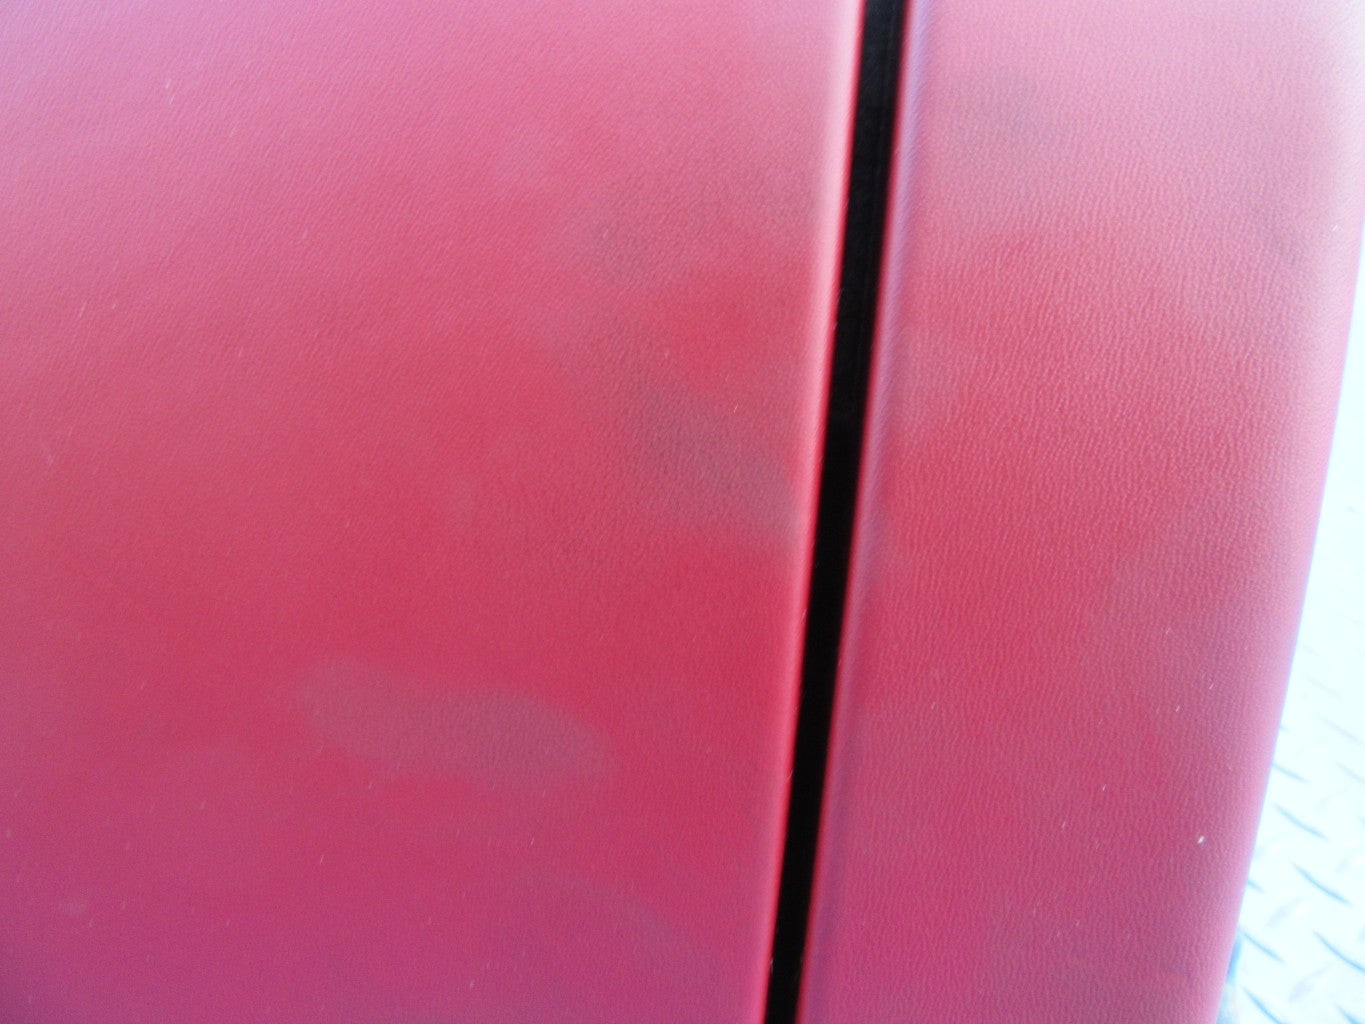 Maserati Quattroporte dash dashboard red black